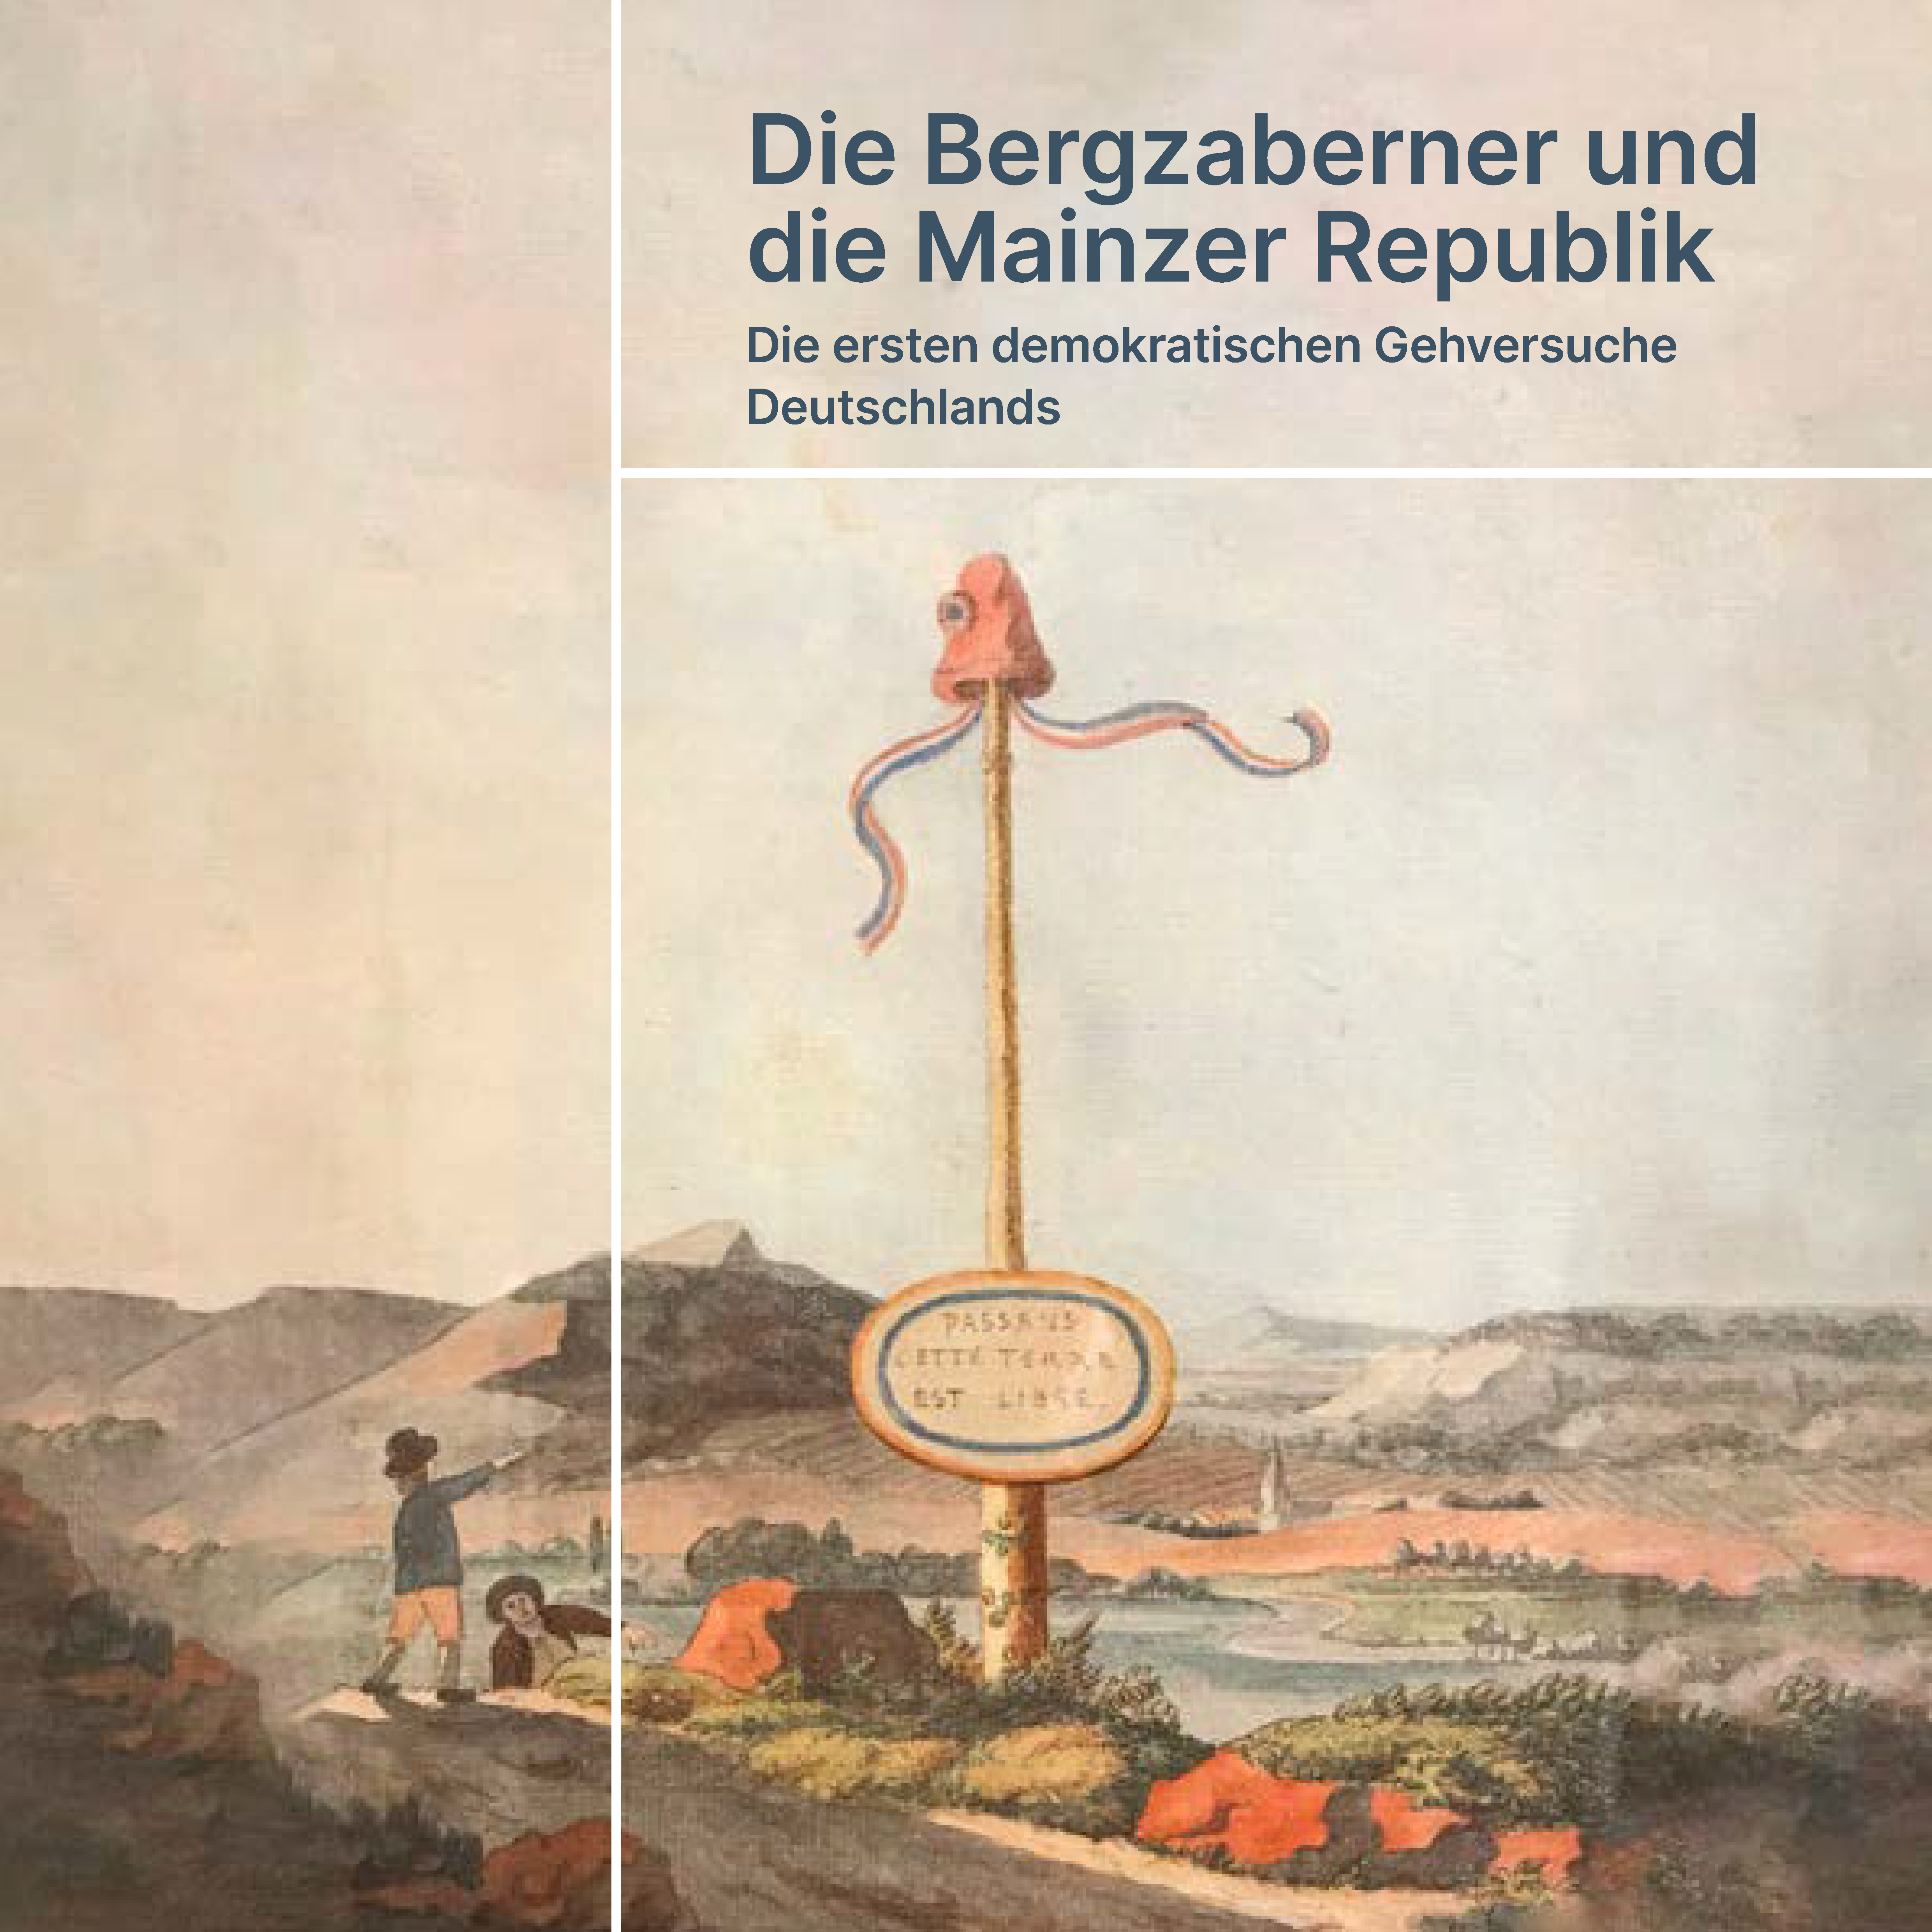 Das Booklet der GEDG zur Bergzaberner und Mainzer Republik.